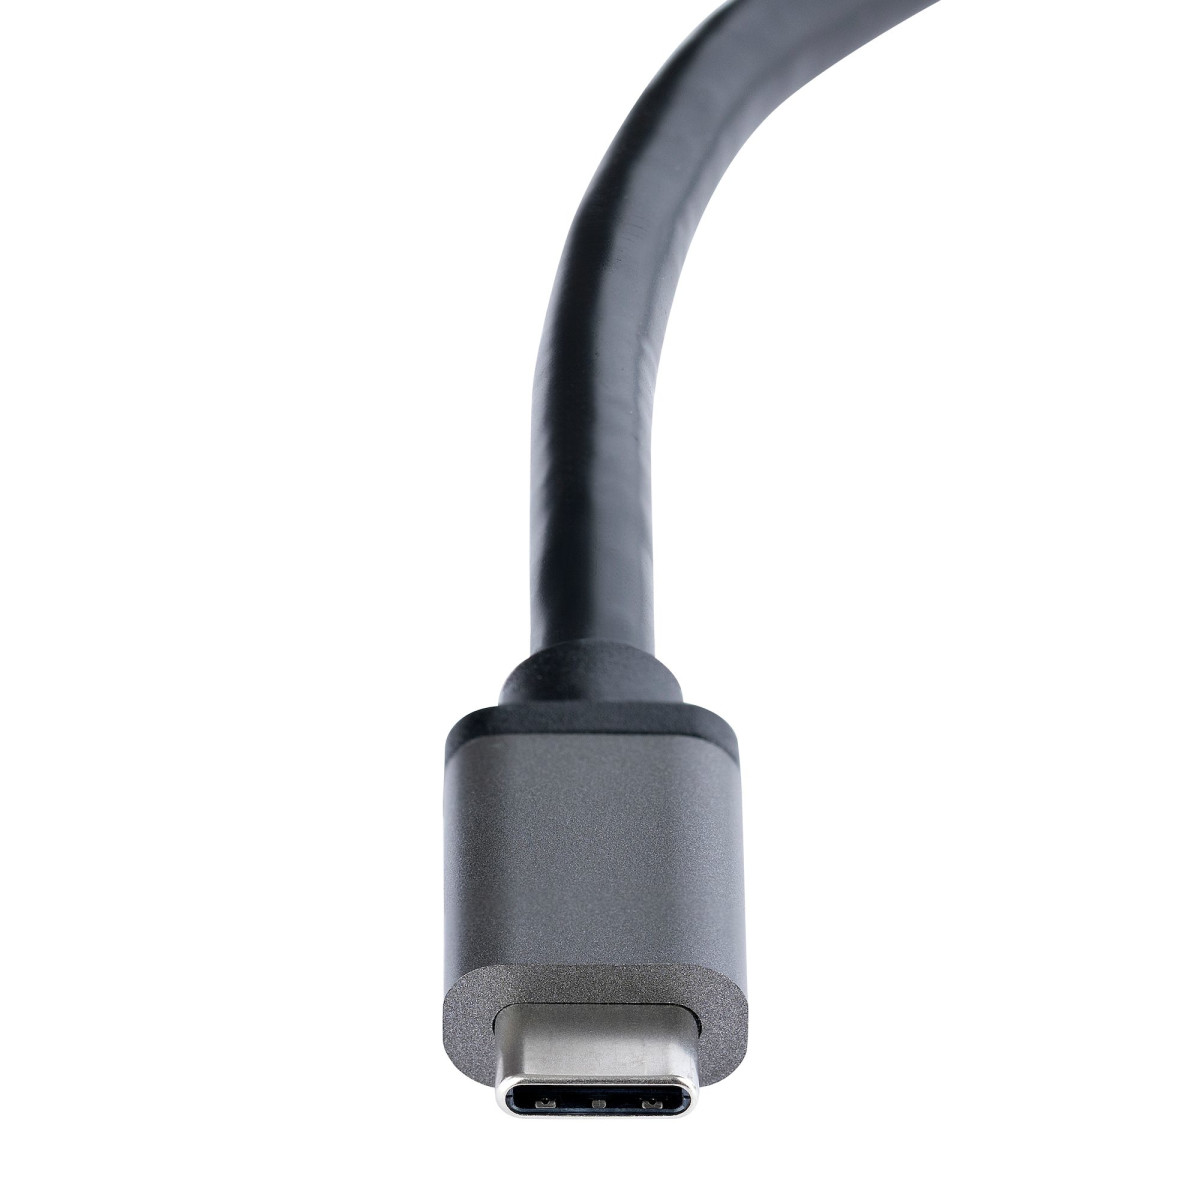 USB-C To Dual HDMI MST HUB 4K 60Hz